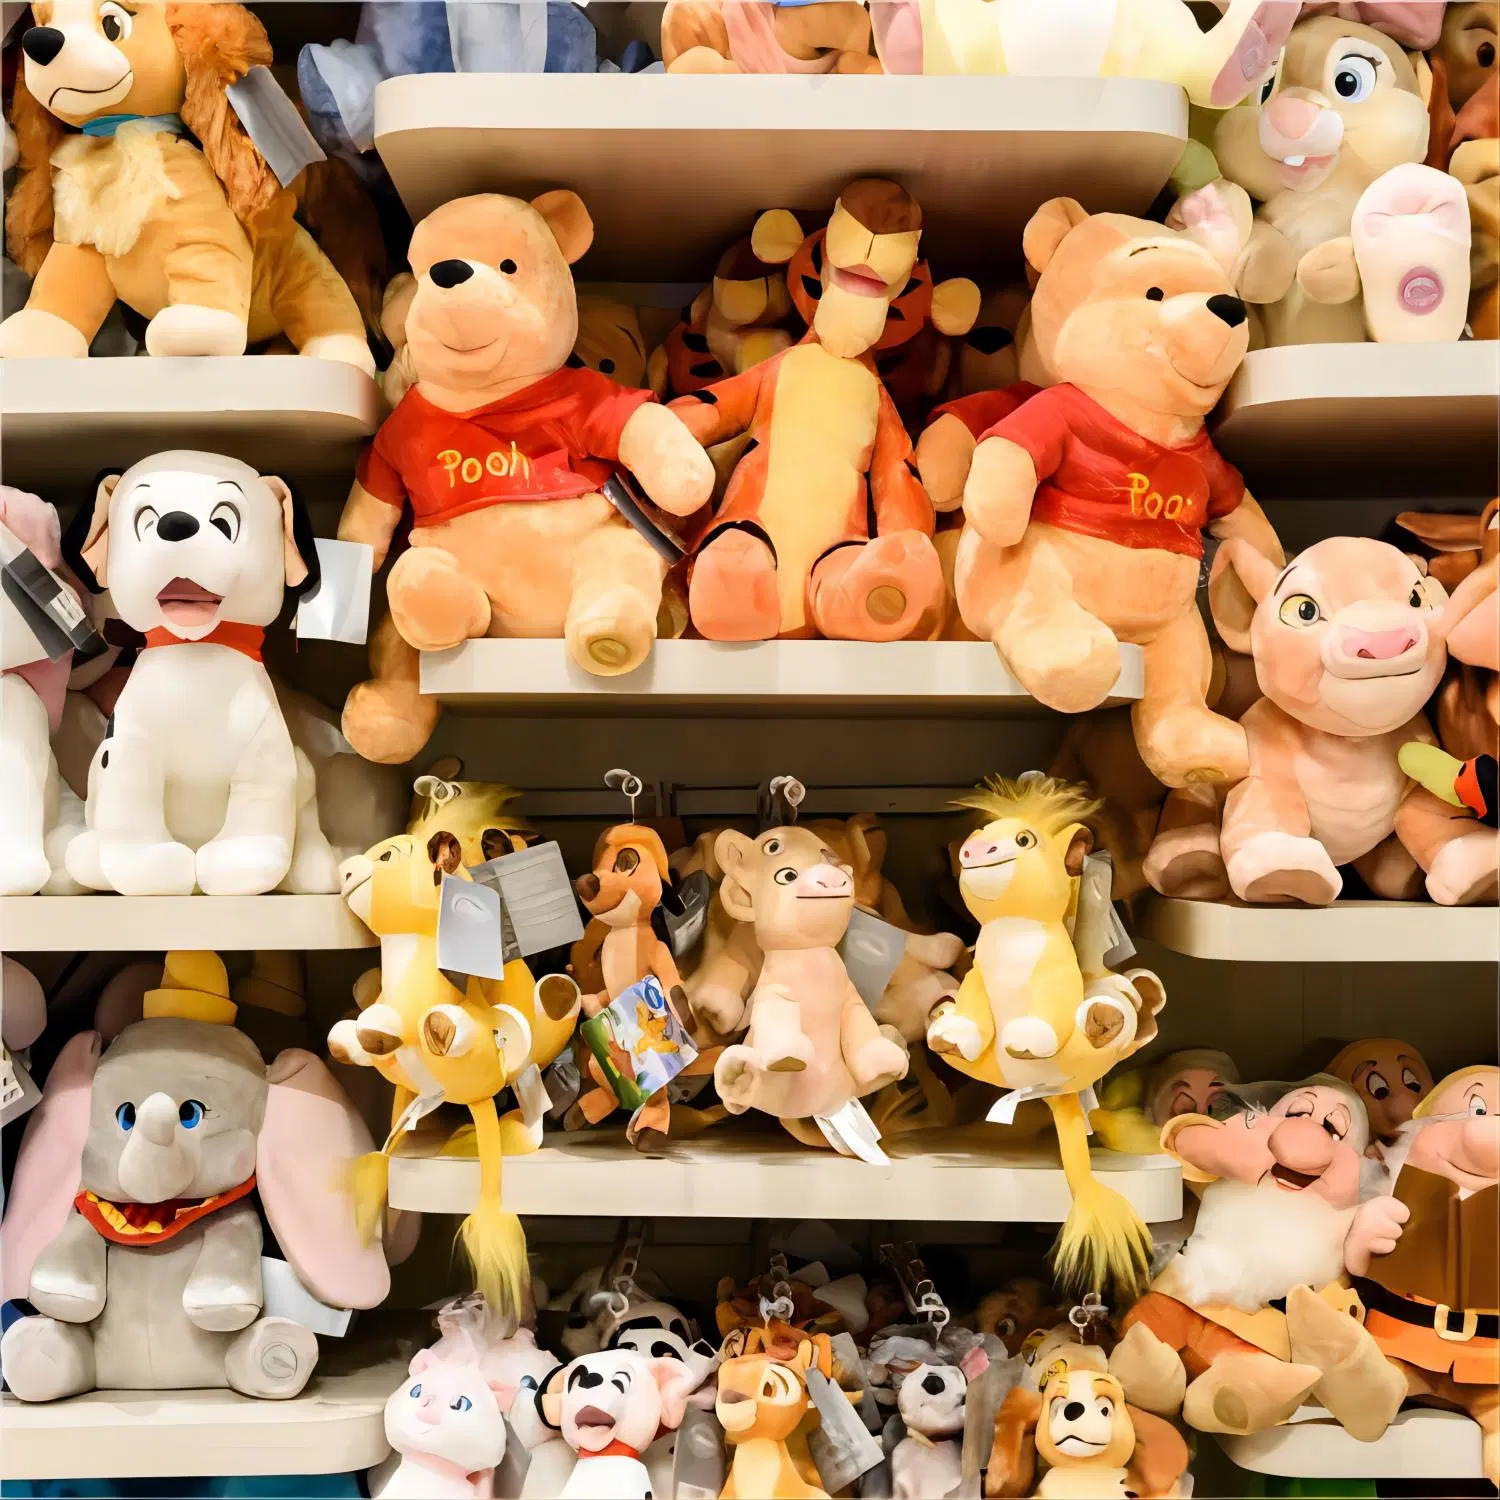 На заводе для изготовителей оборудования индивидуального плюшевые игрушки детям игрушки рисованные персонажи аниме продуктов пользовательских Plushie оптовые цены на пользовательские мягкие игрушки производителя в Китае